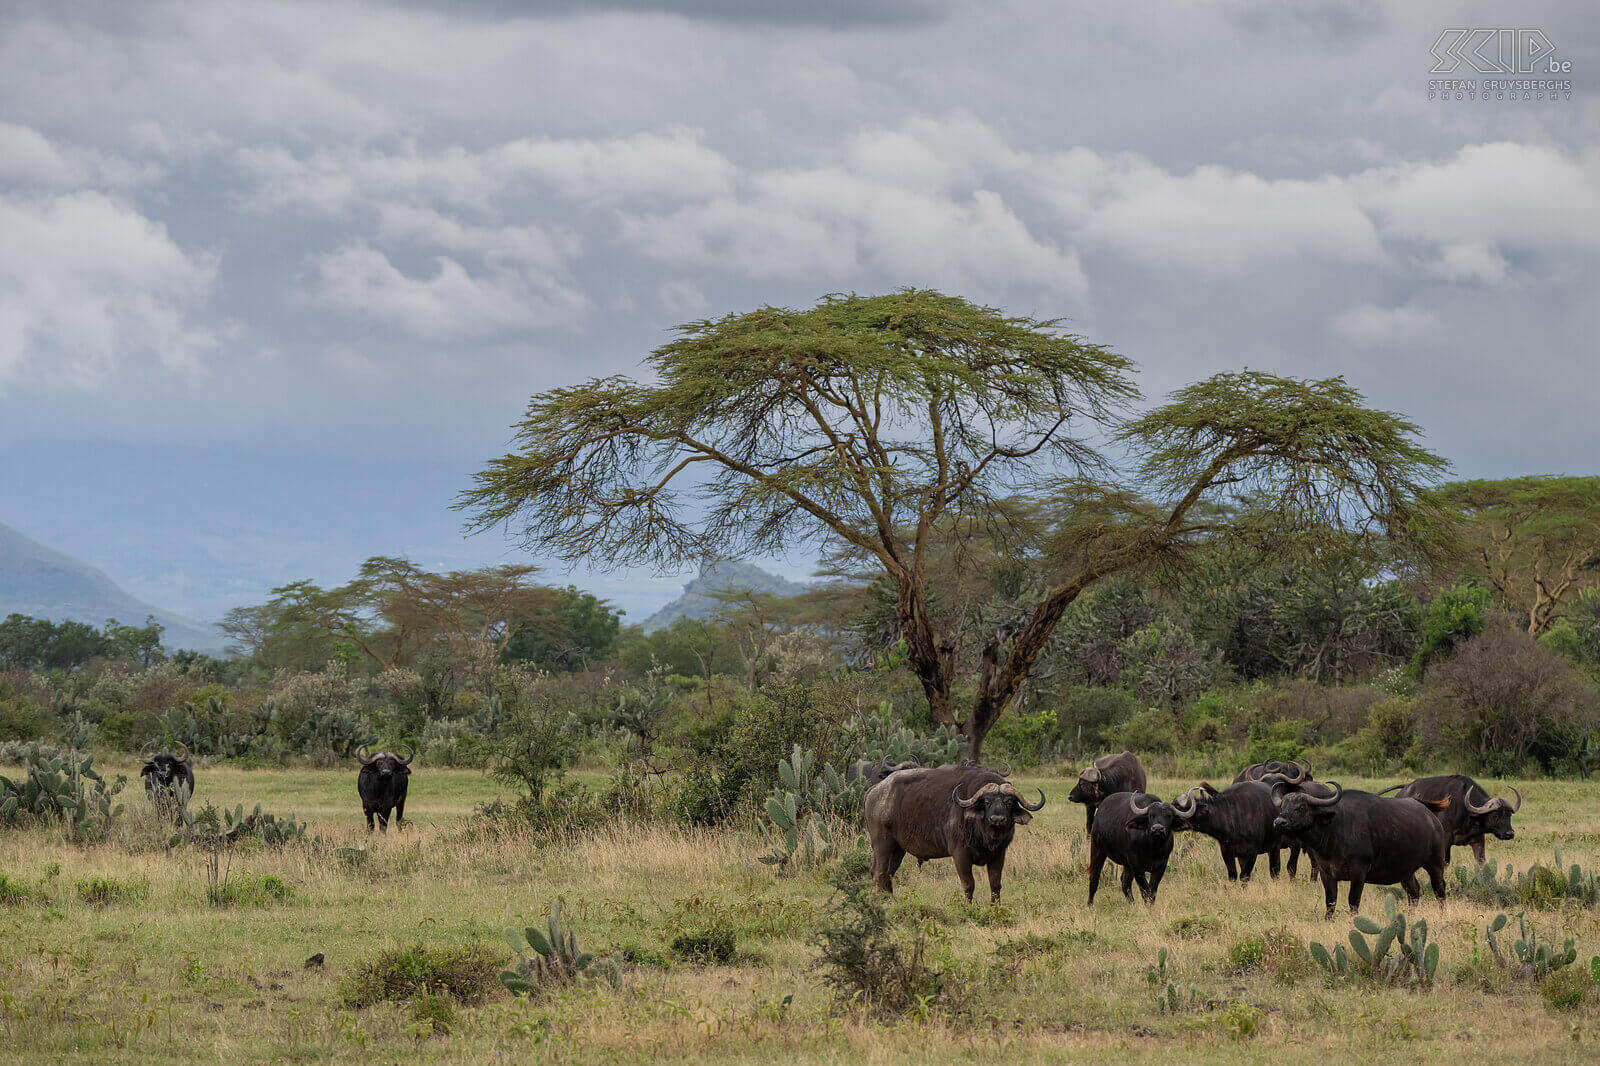 Soysambu - Afrikaanse buffels De Afrikaanse buffel is het grootste holhoornige hoefdier in Afrika. Ze kunnen tot 850 kg wegen en ze leven in grote kuddes zowel op de savanne als in bossen. Het is bovendien ook één van de big five-soorten. De buffel is een geliefkoosde prooi voor leeuwen. Wij konden grote groepen buffels spotten in het prachtige Soysambu Conservancy nabij Lake Elementaita. Stefan Cruysberghs